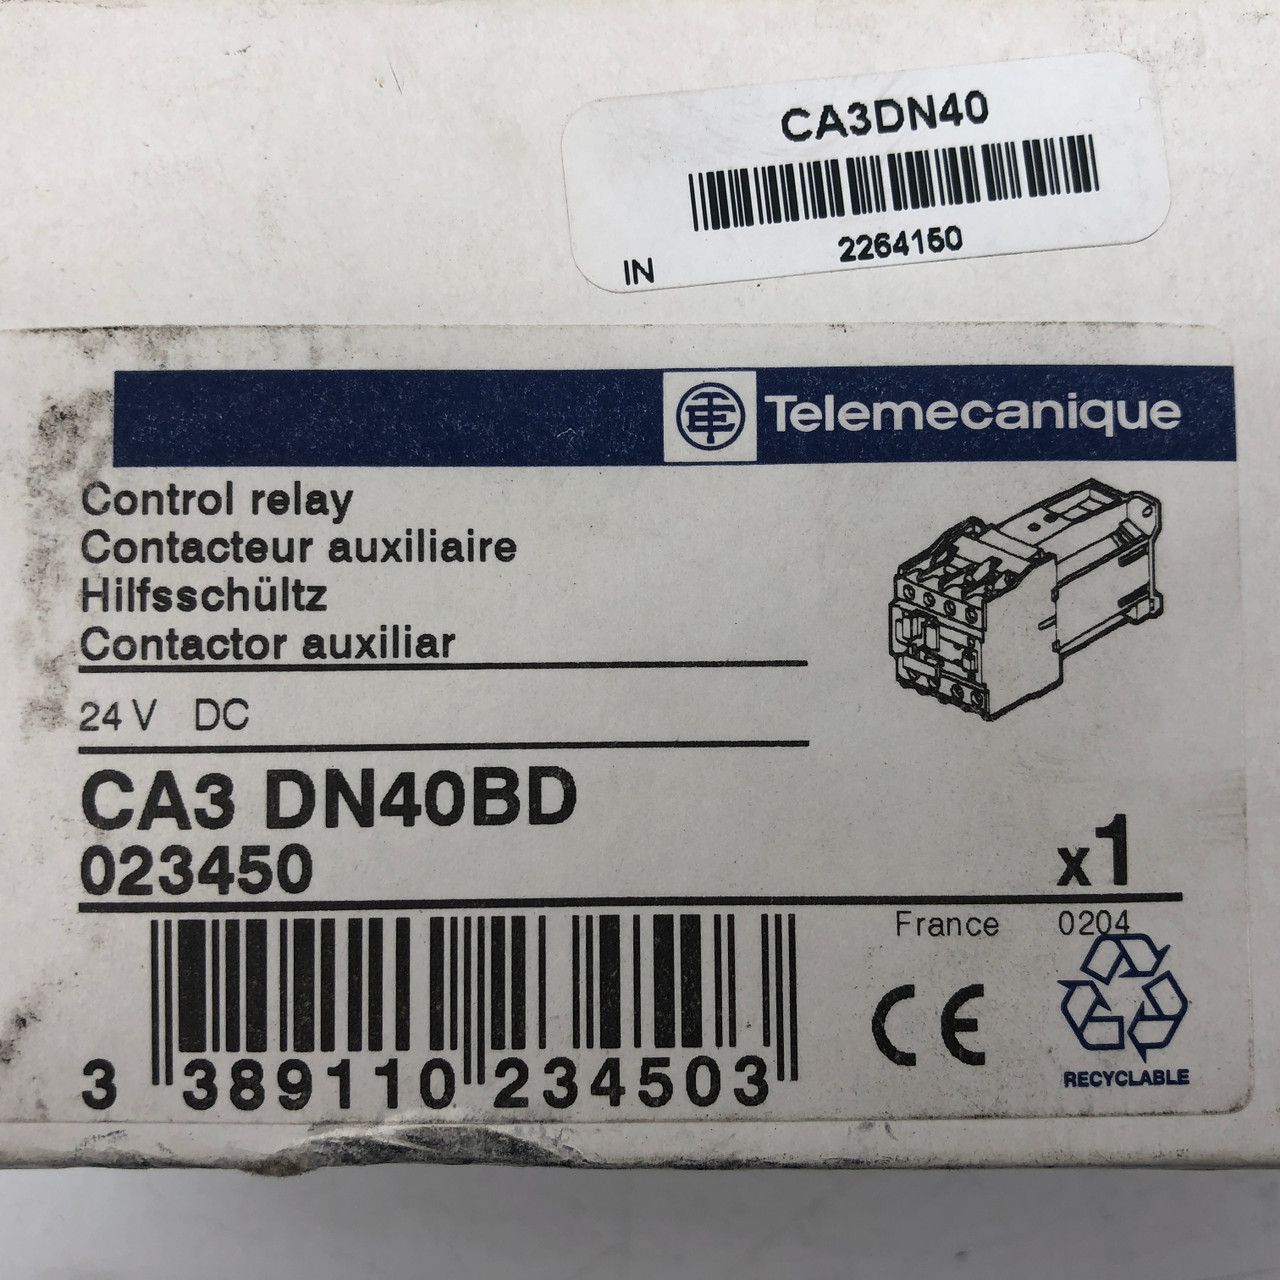 TELEMECANIQUE CA3 DN40BD 24VDC CONTROL RELAY - NEW